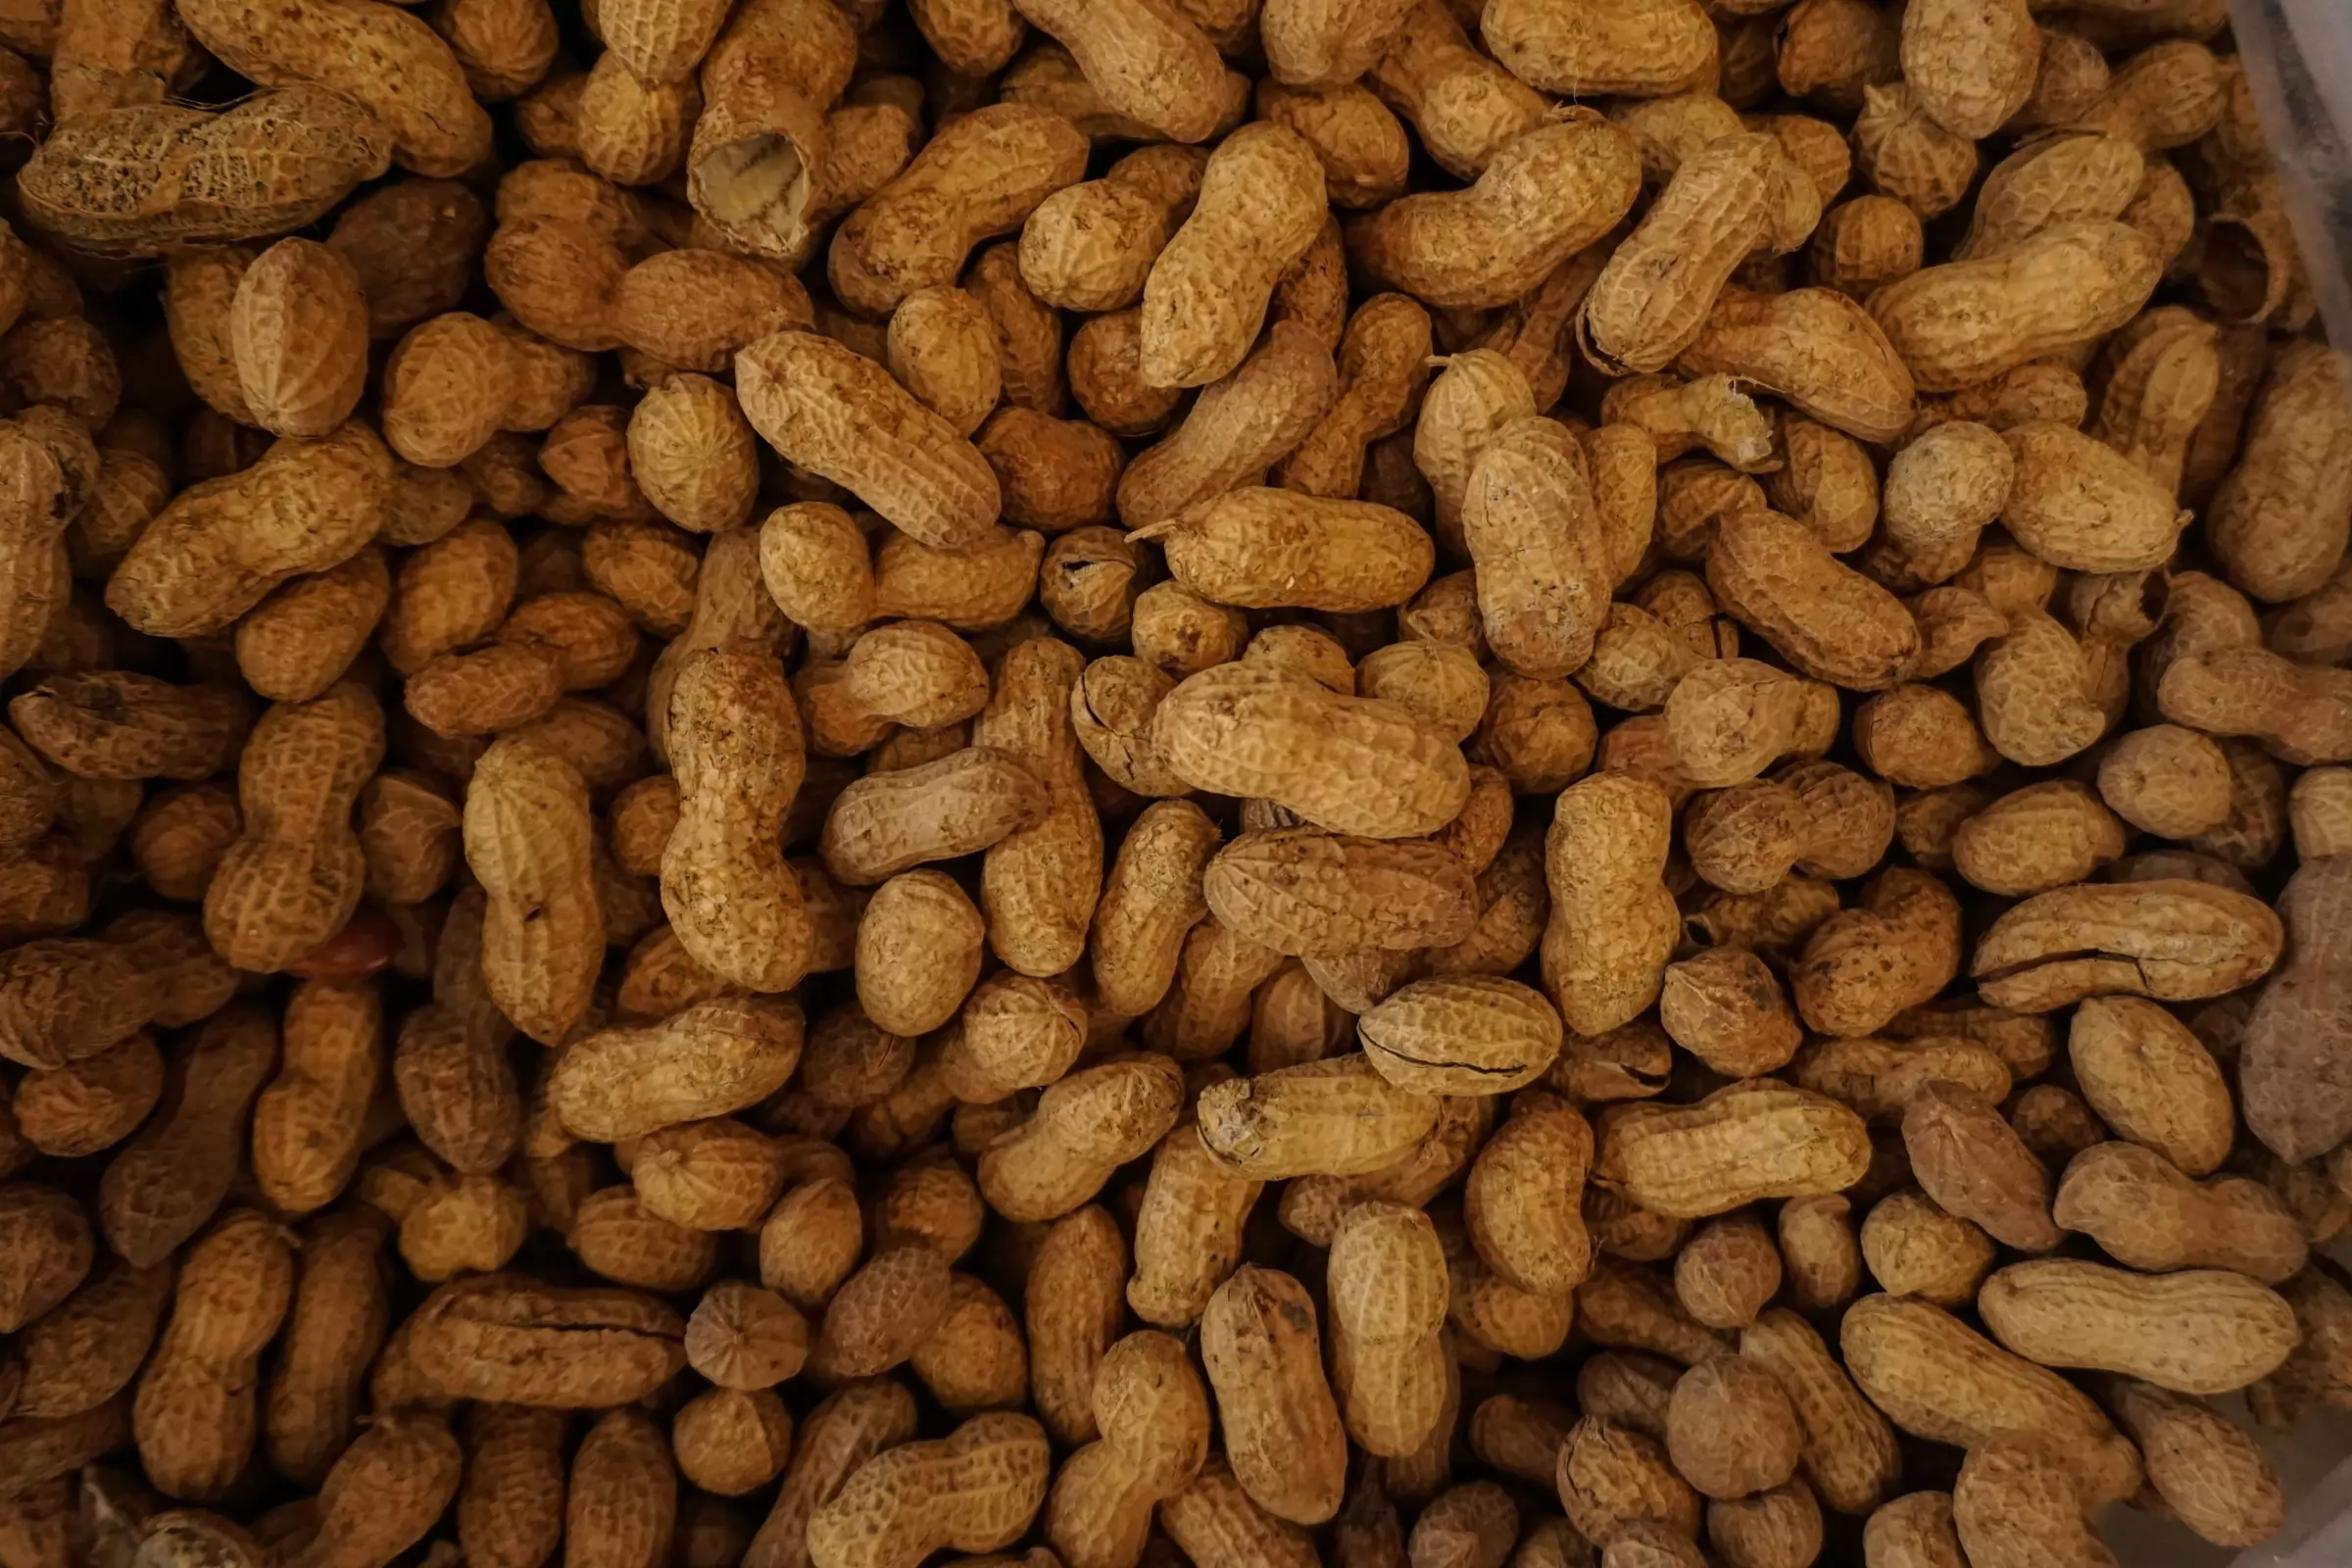 the peanut market